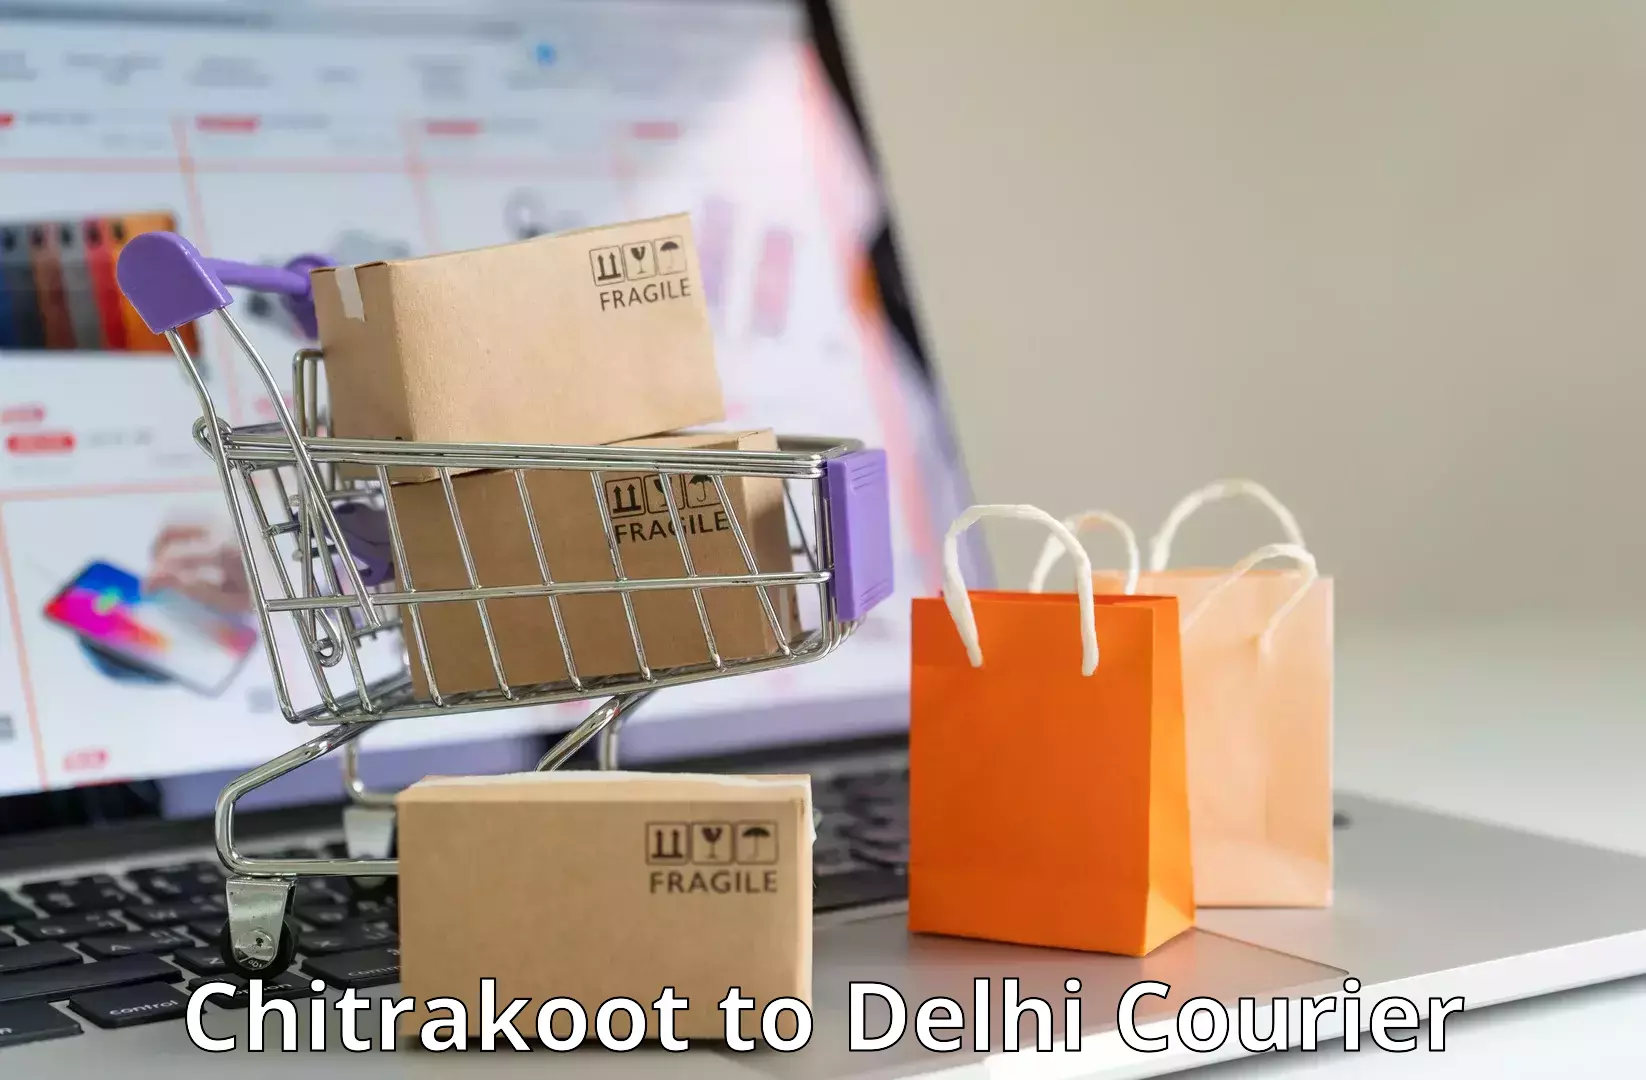 On-call courier service Chitrakoot to Jamia Millia Islamia New Delhi